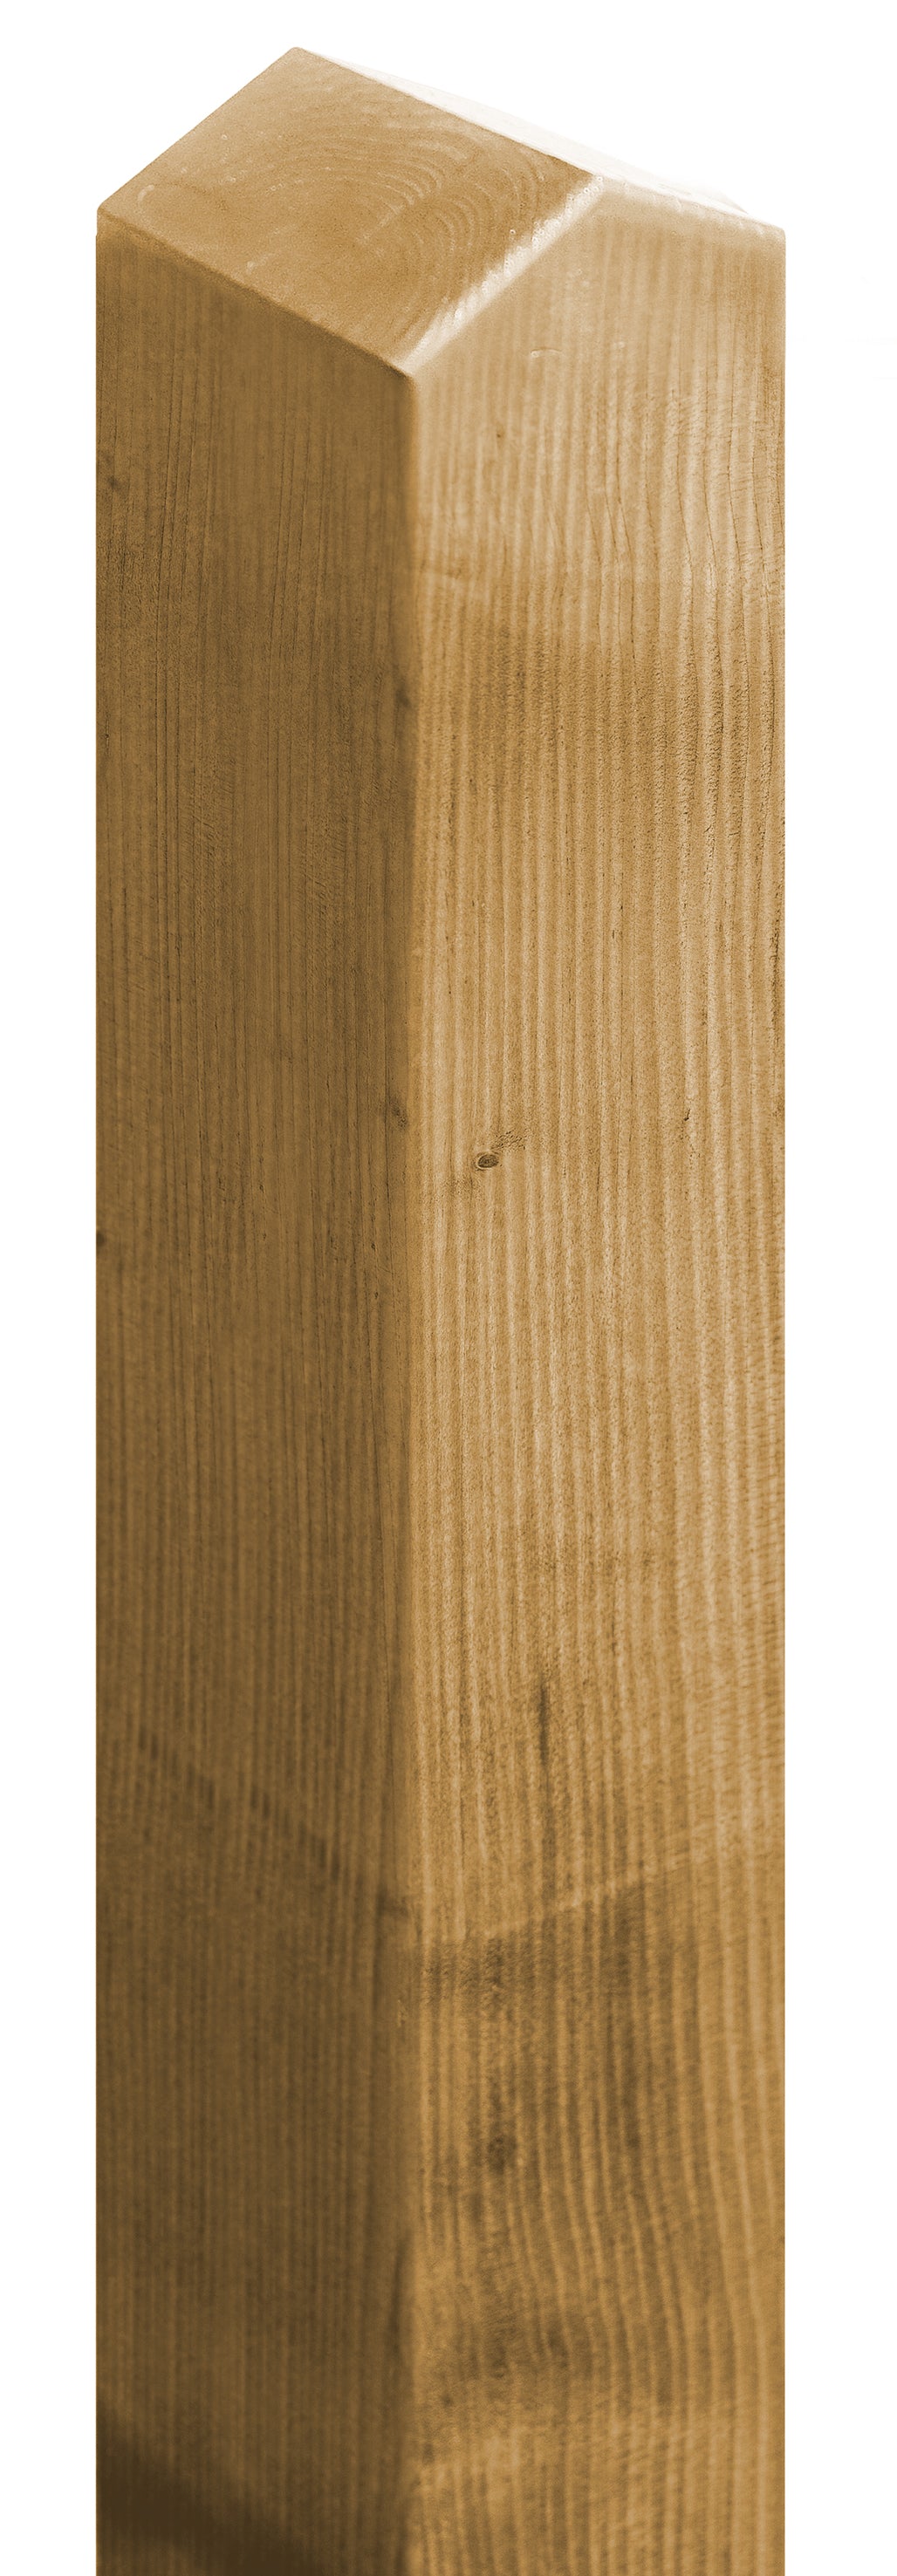 Komfort-Pfosten Spitzkopf aus haltbarer Fichte KDI SCHEERER - FREESE Holz 